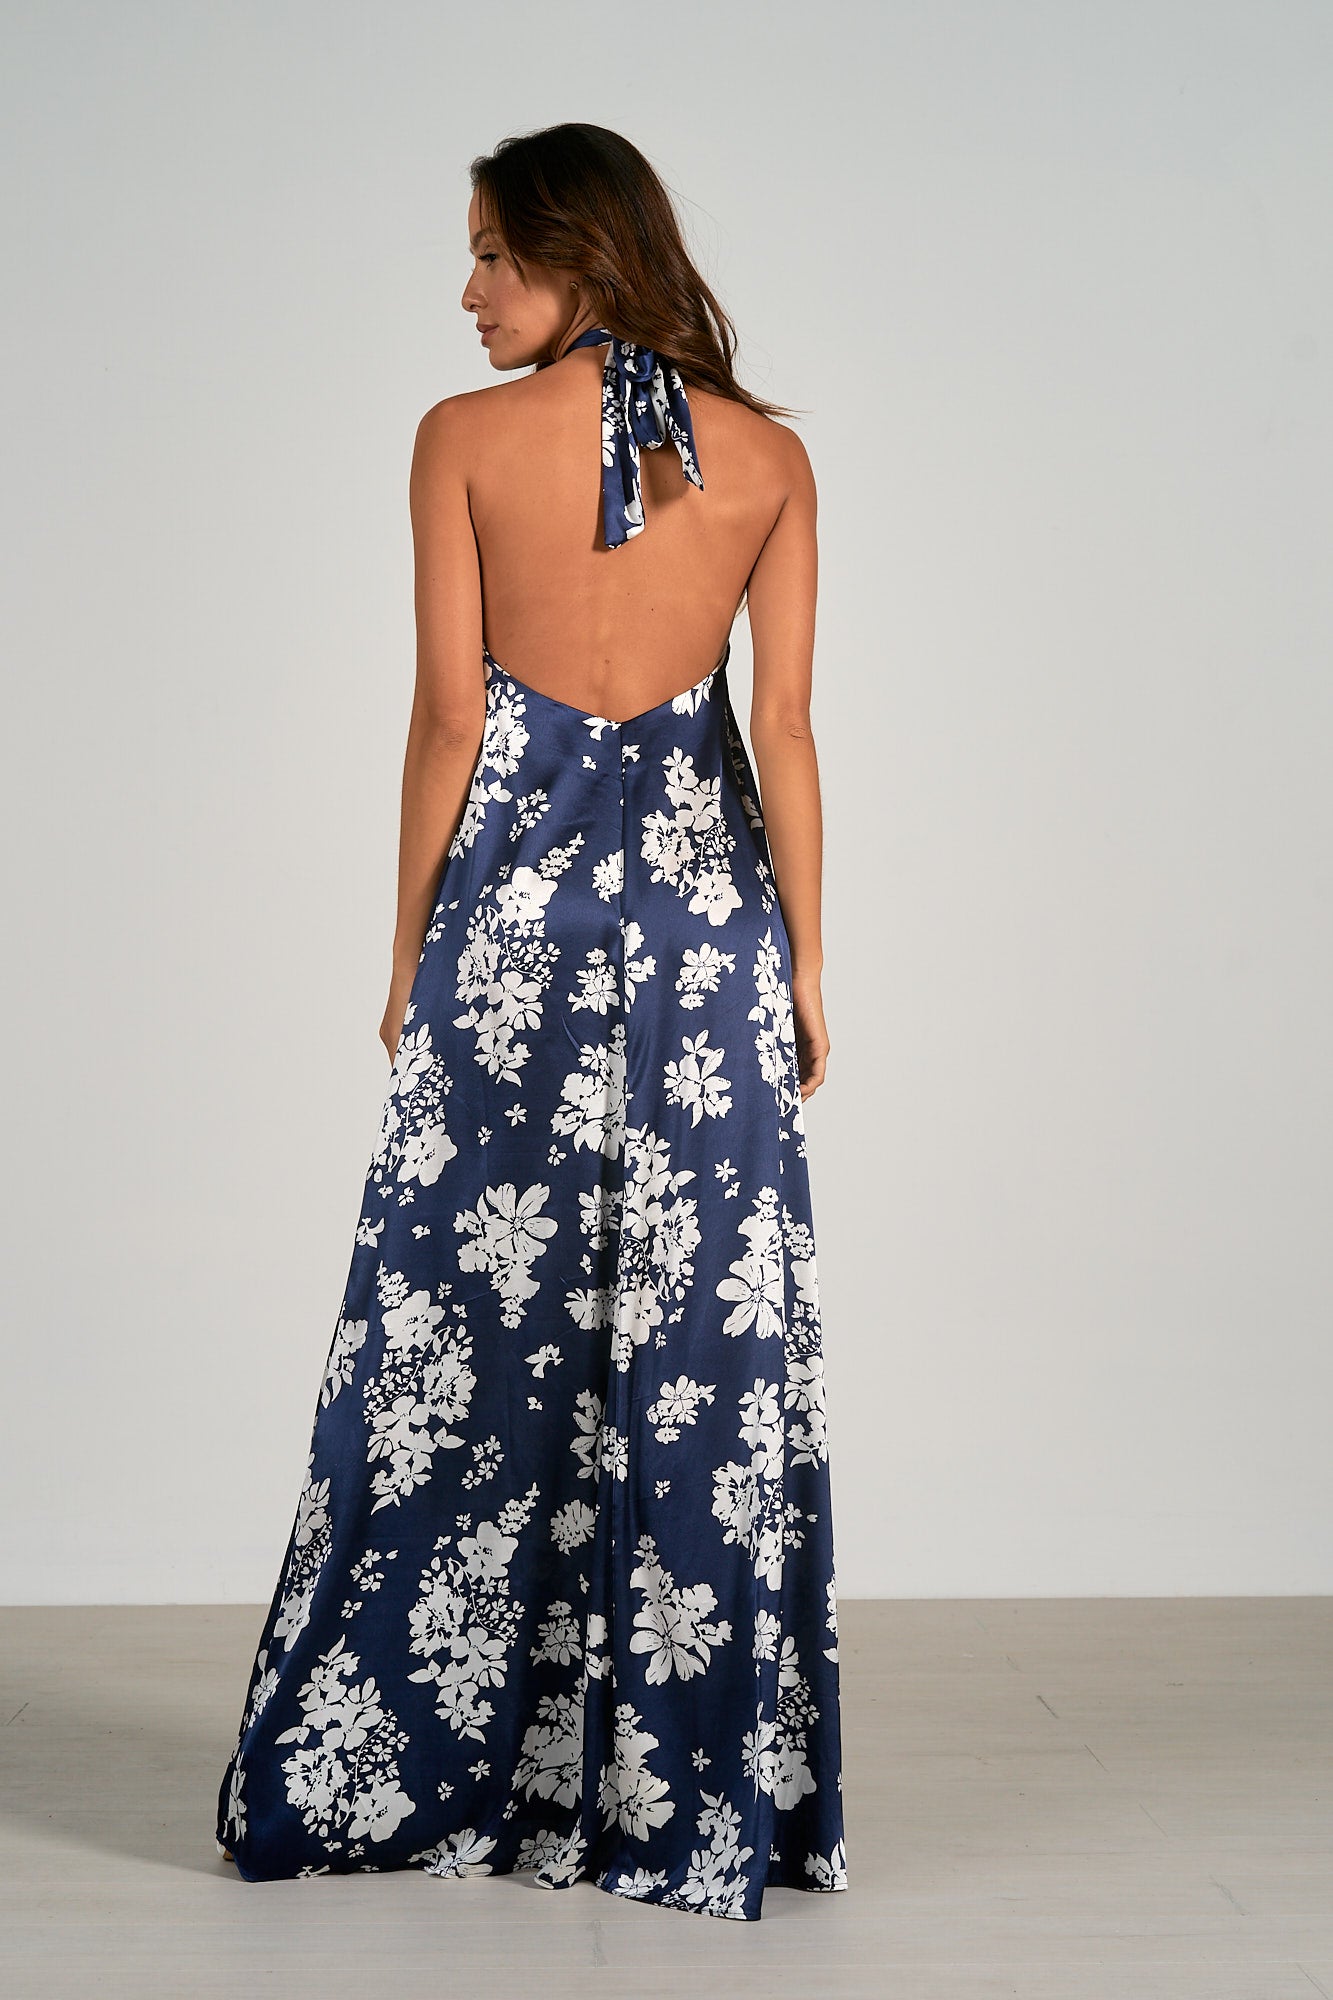 Elan Capri Floral Halter Maxi Dress